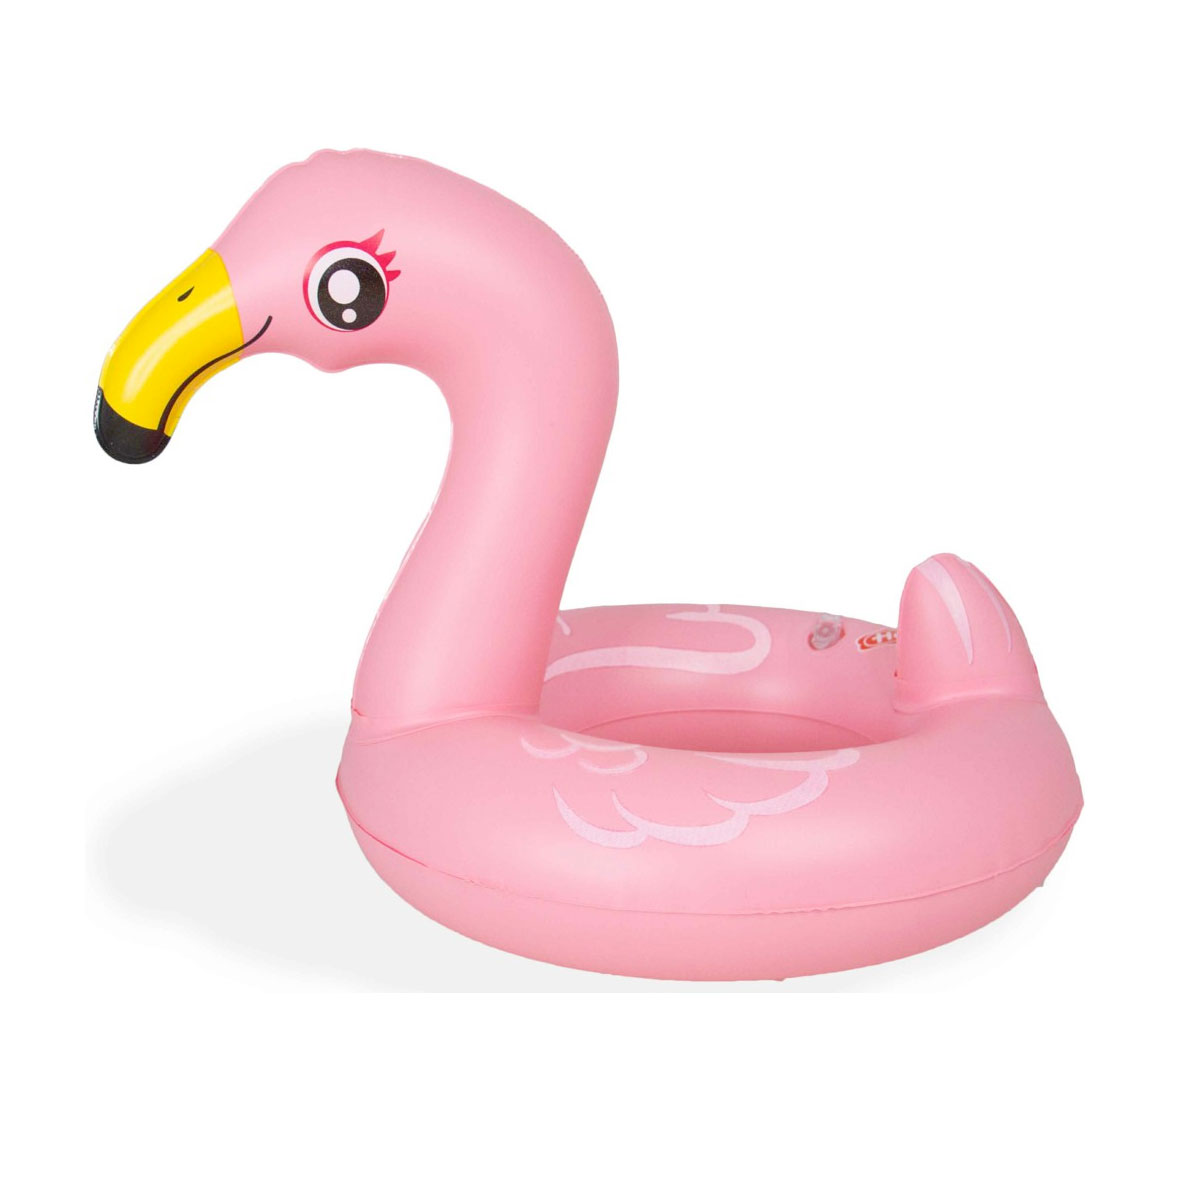 Ensemble de natation pour poupées Flamingo, 35-45 cm